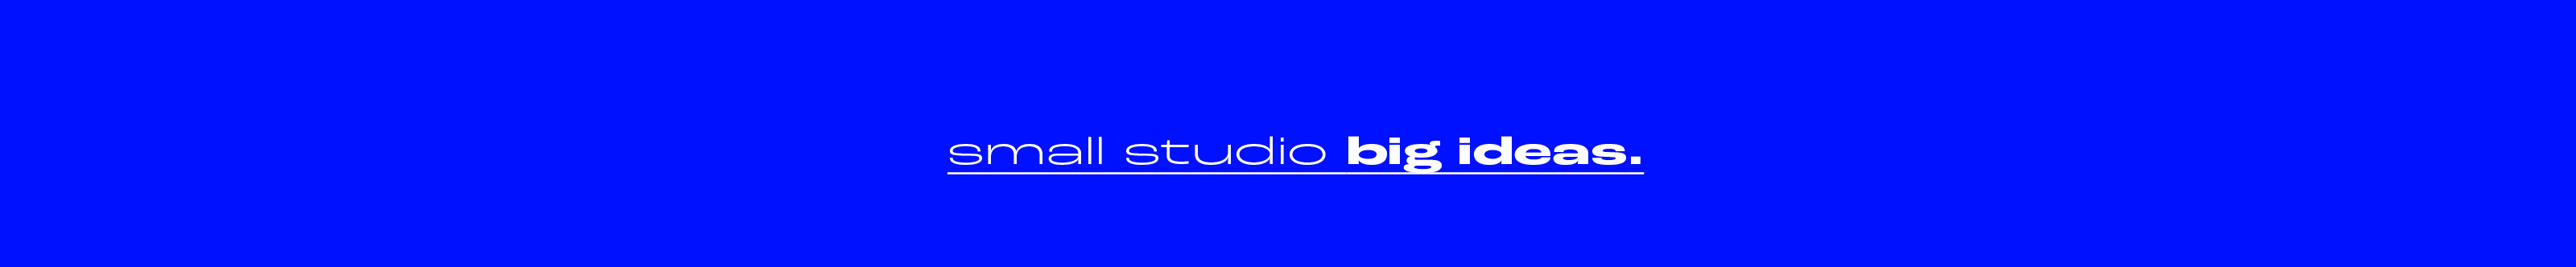 2Wins Studio's profile banner